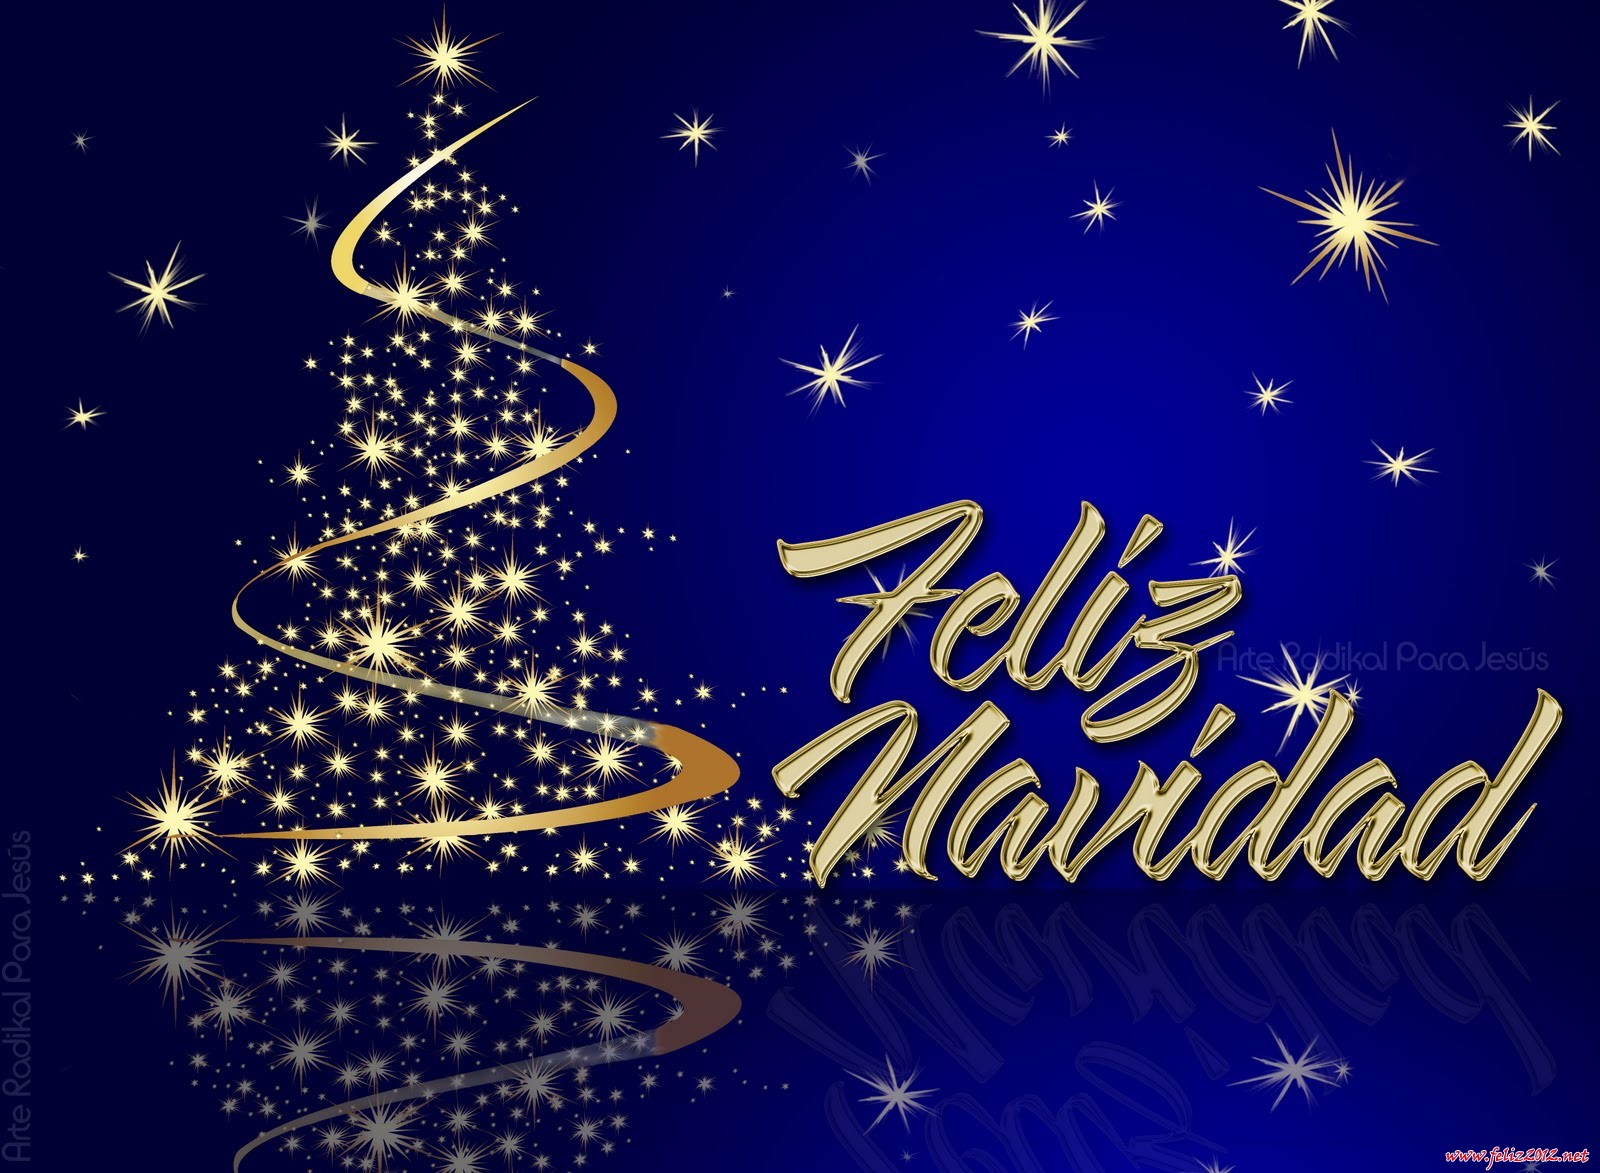 Desde COPTURISMO les deseamos una Feliz Navidad y nuestros mejores deseos para la nueva década que pronto comienza.